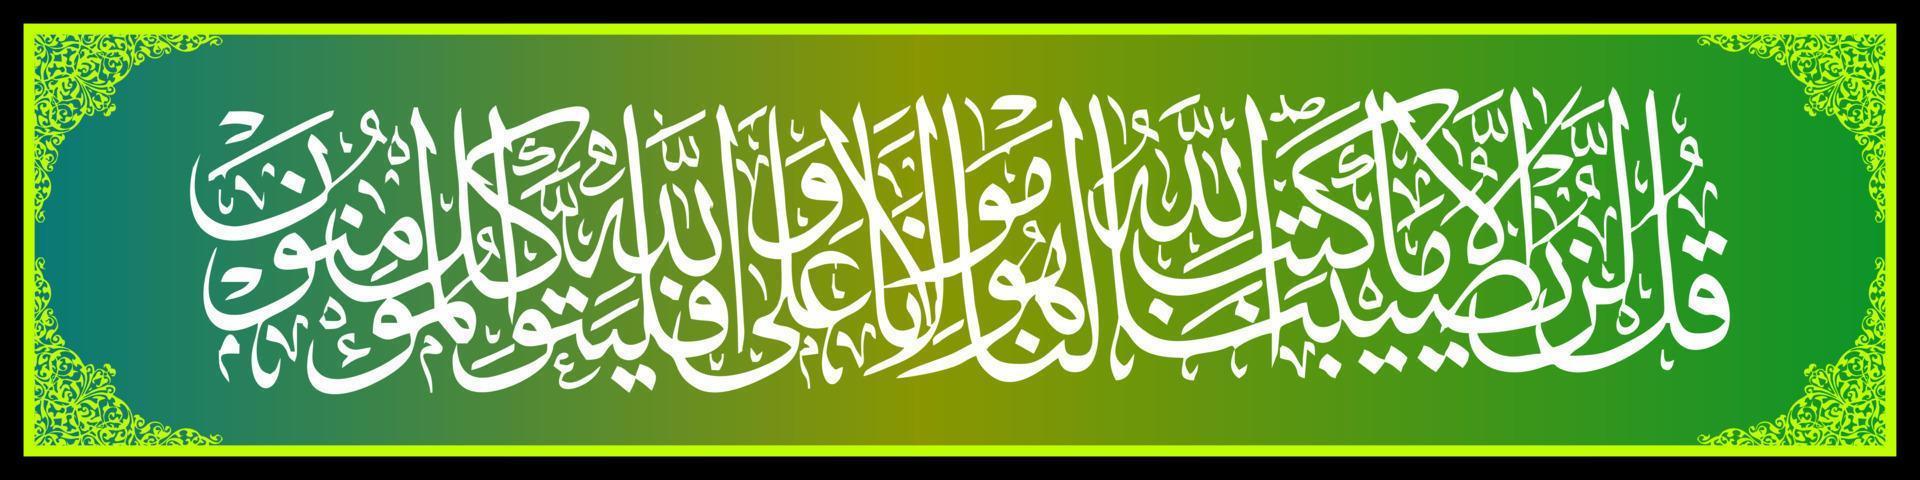 Arabisch schoonschrift al koran soera attaubah 51, vertaling zeggen Mohammed, niets zullen gebeuren naar ons behalve wat Allah heeft gewijd voor ons. hij is onze beschermer, vector